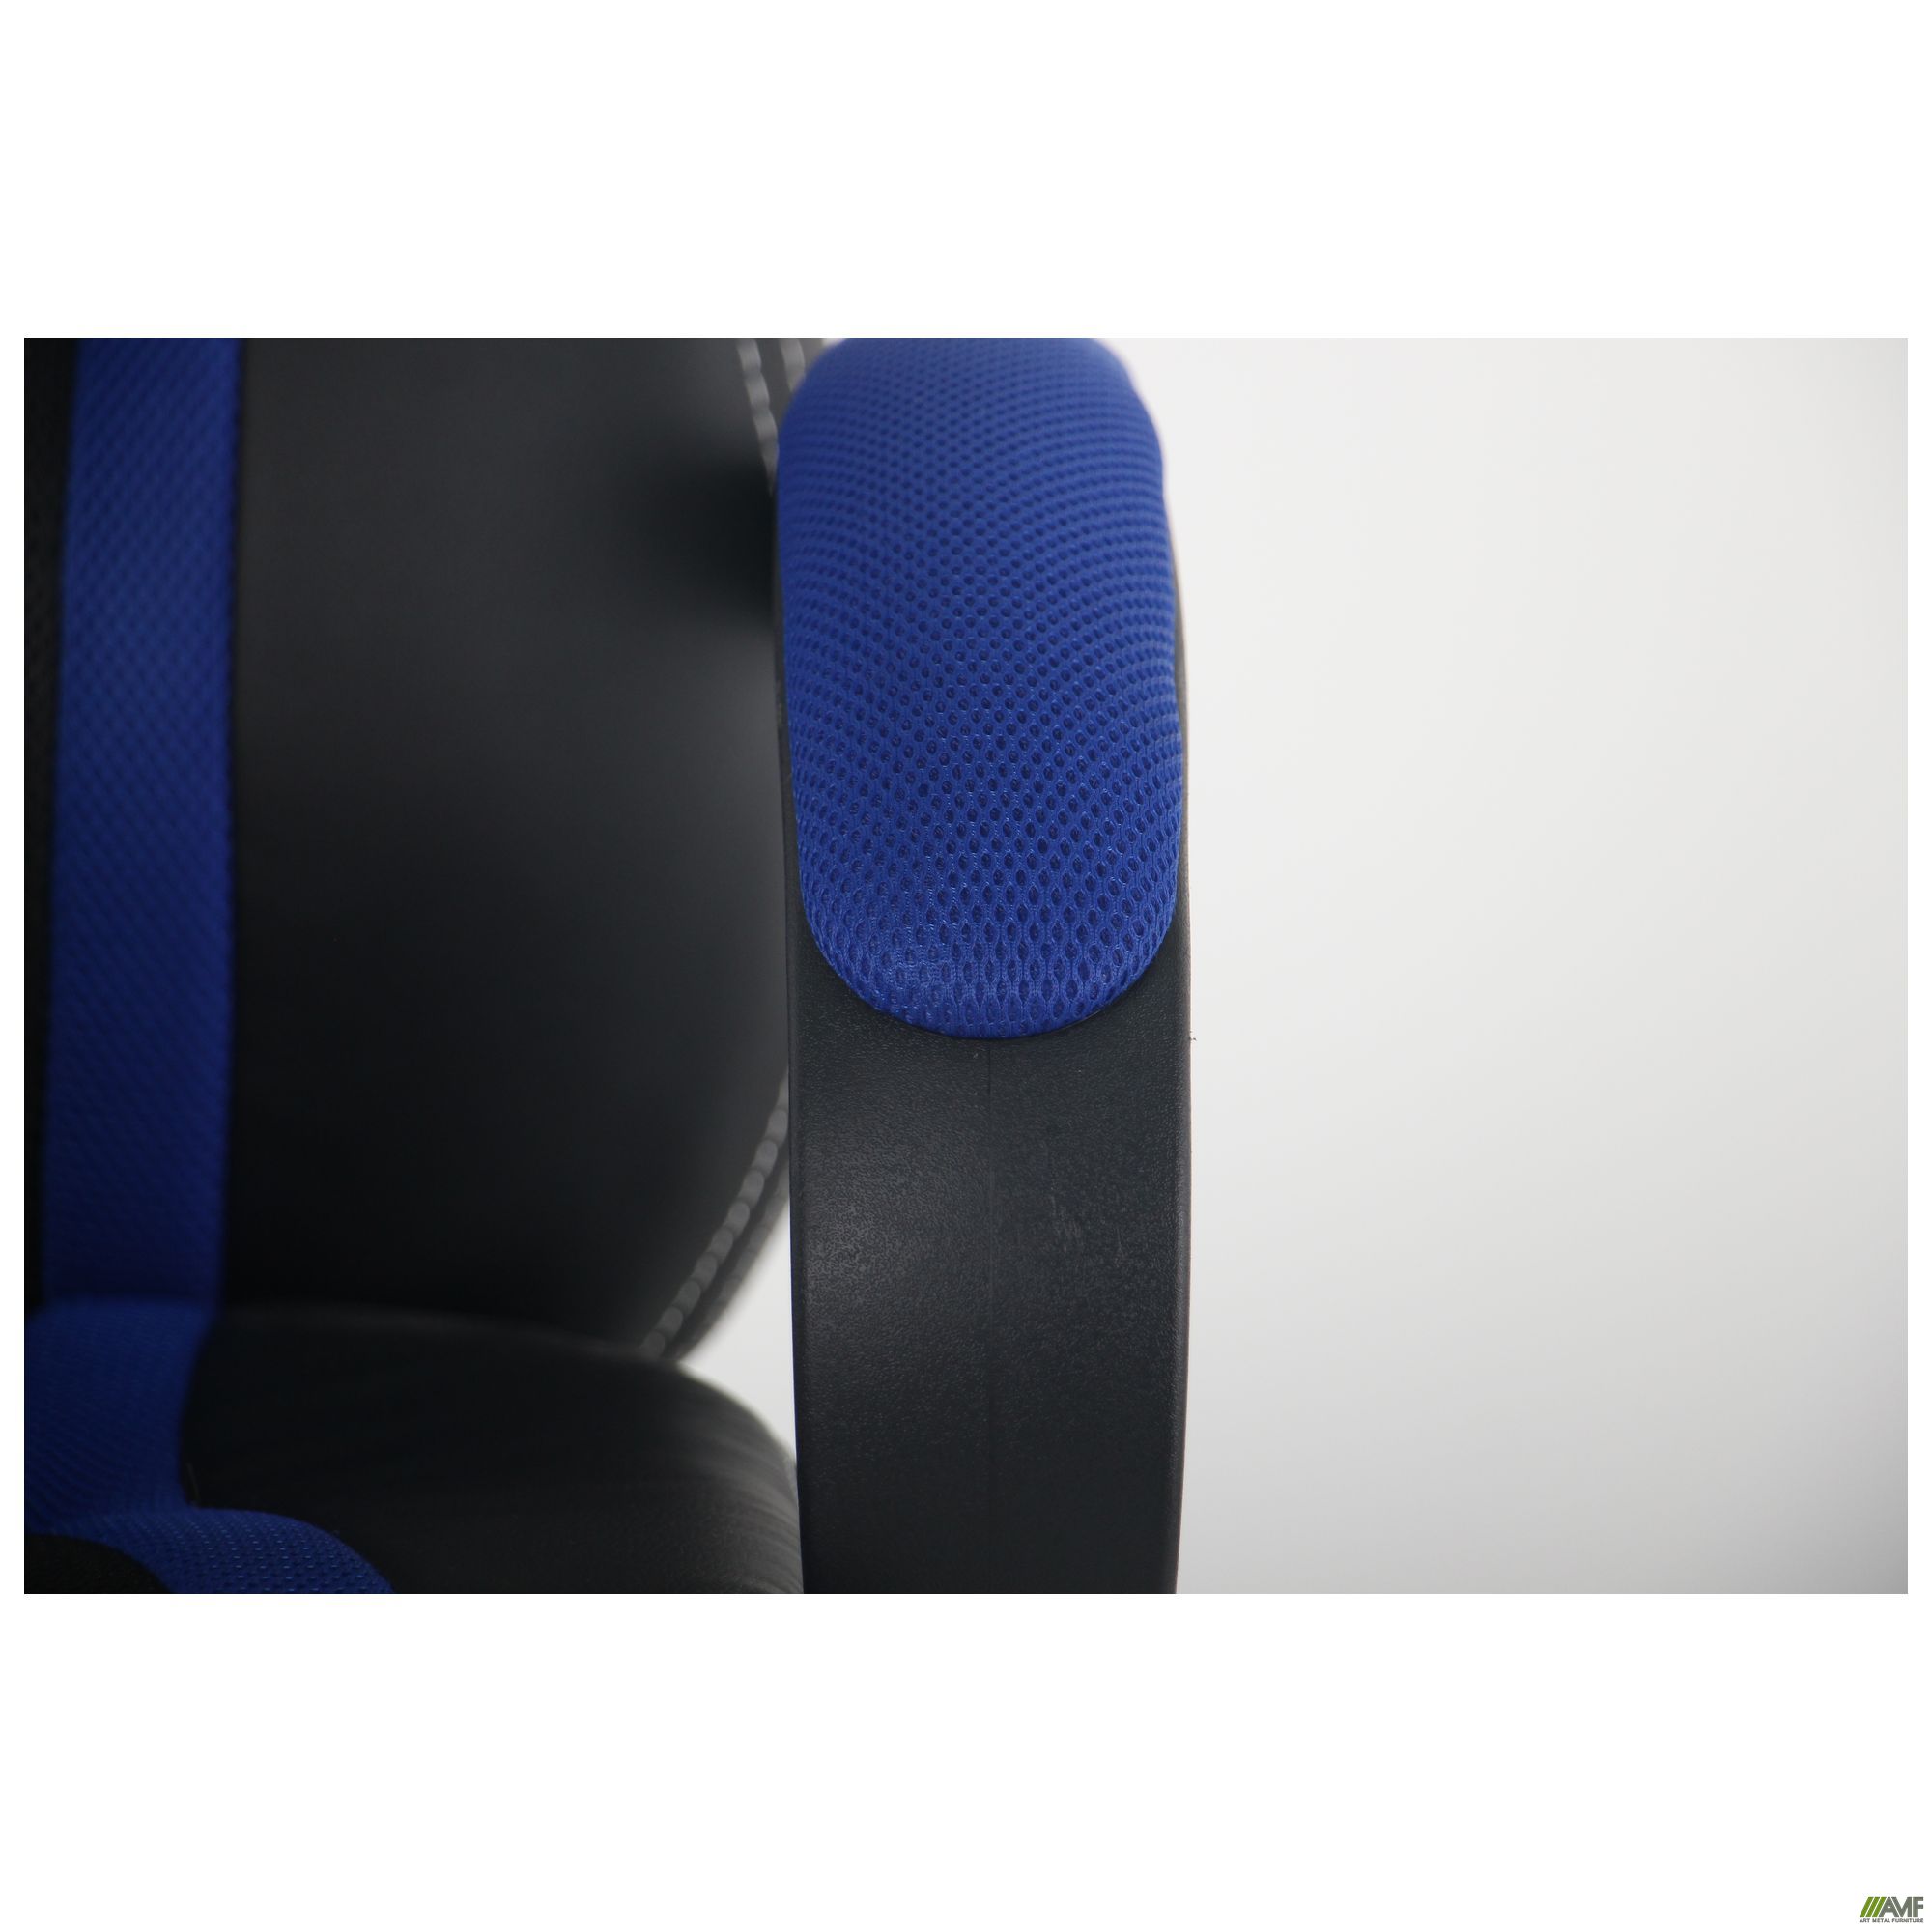 Фото 8 - Кресло Shift Неаполь N-20/Сетка черная, вставки Сетка синяя 